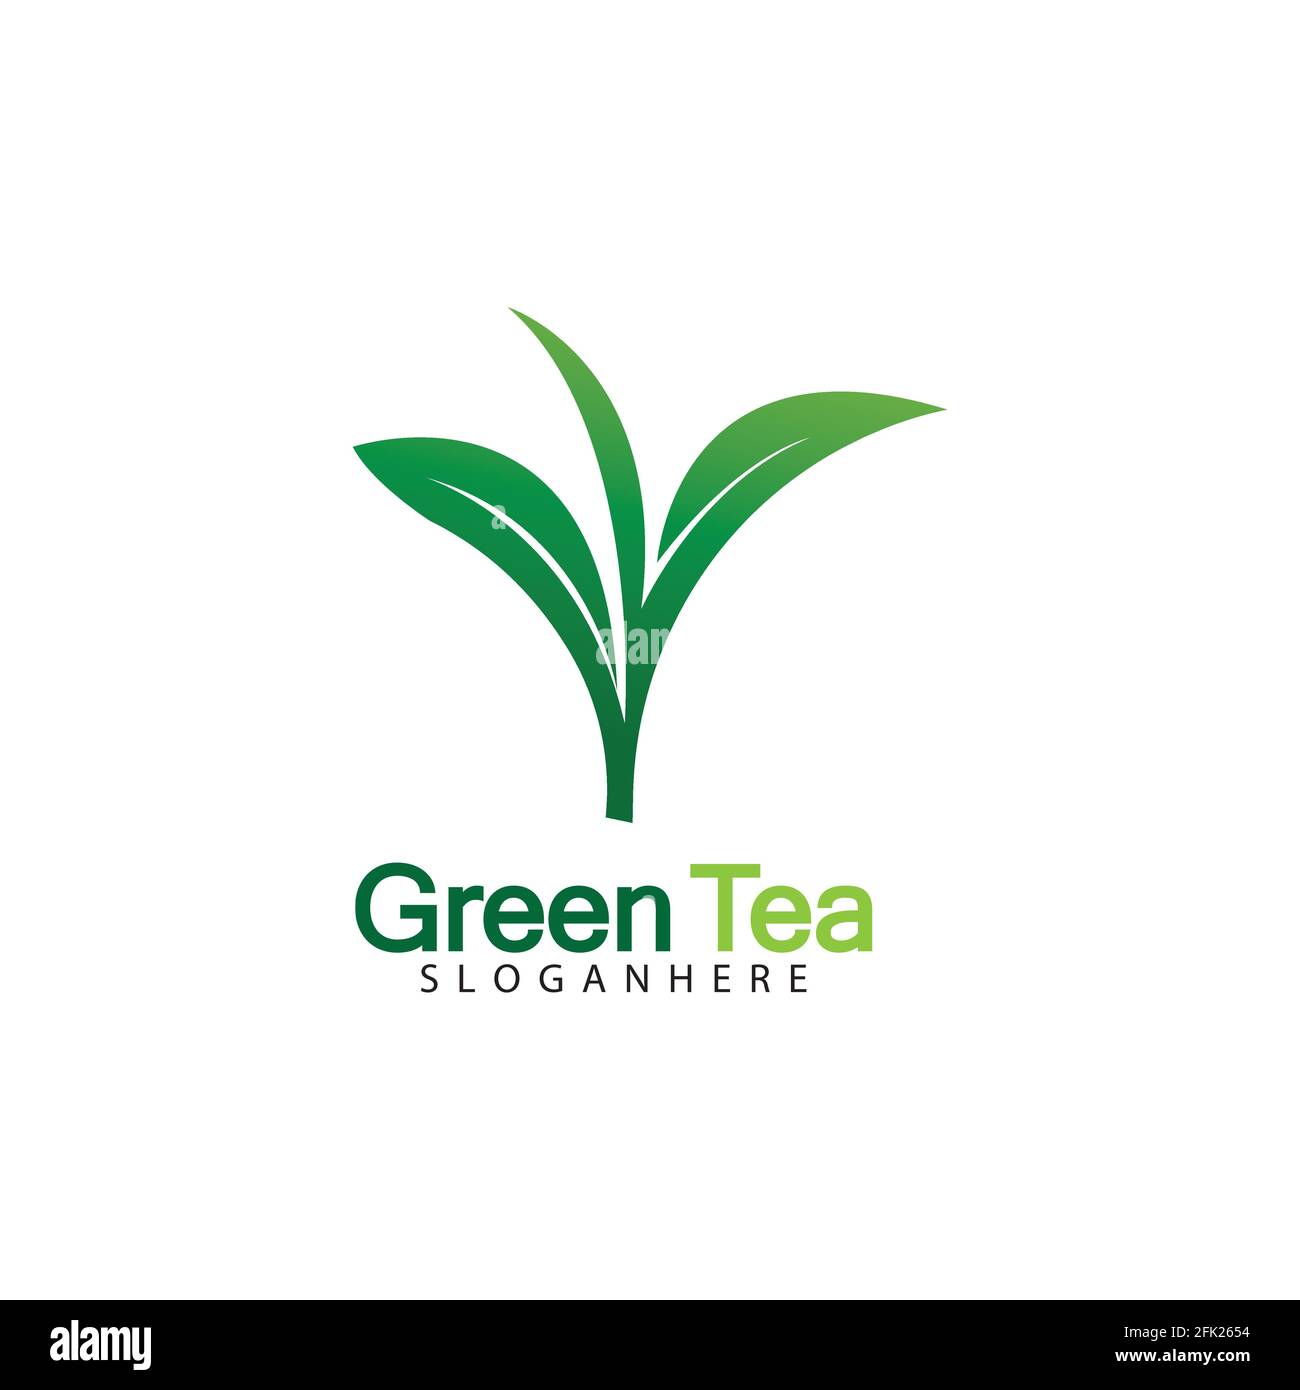 Green Tea With Leaf Logo